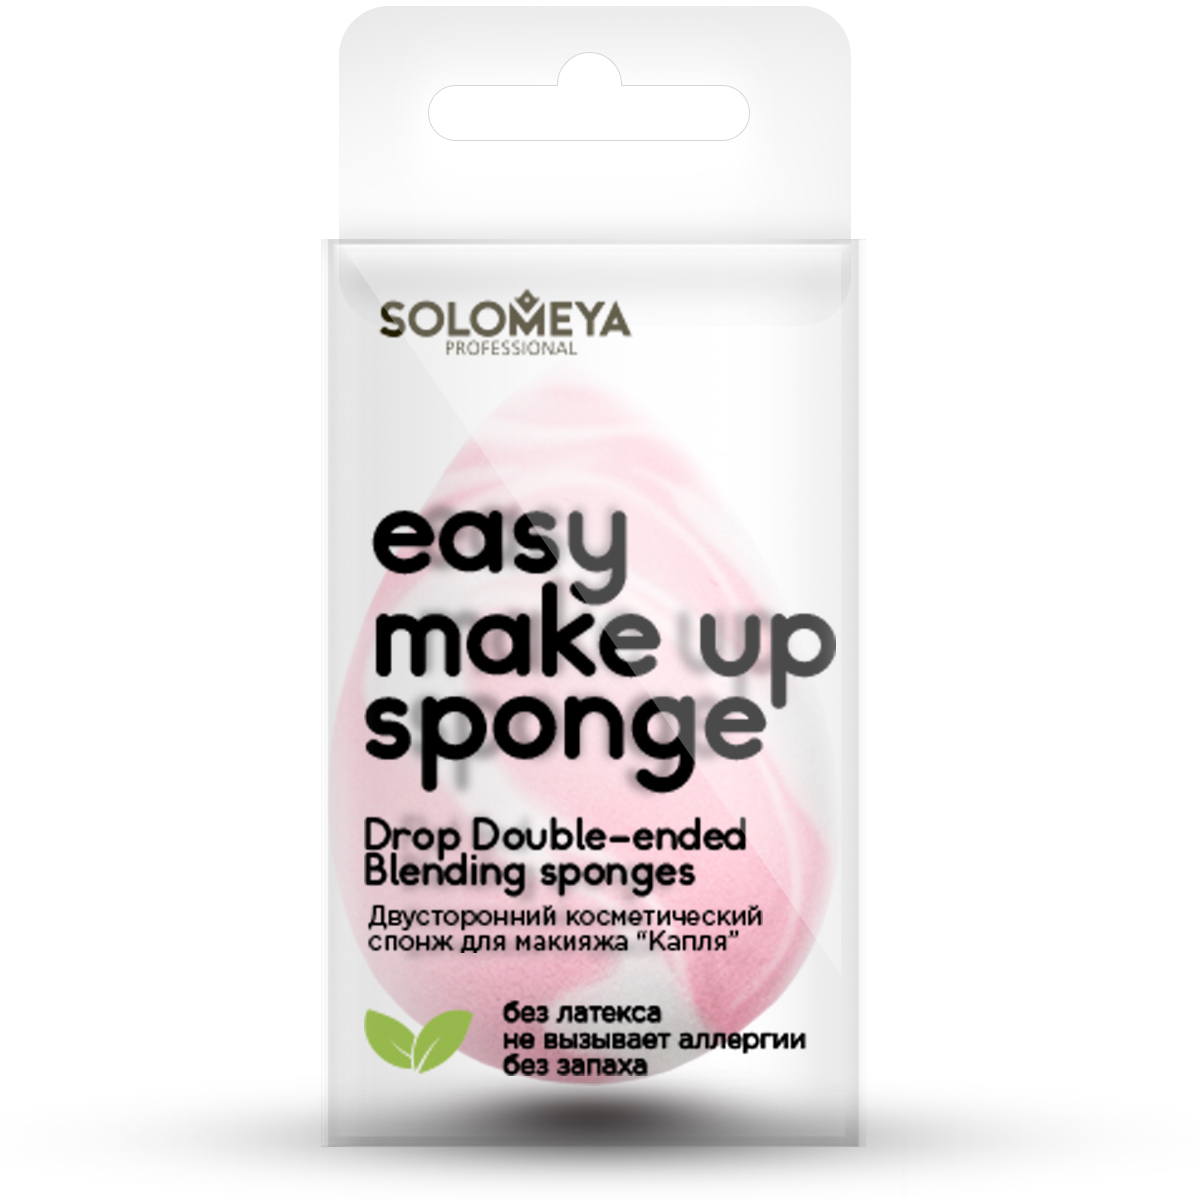 SOLOMEYA Спонж косметический двусторонний для макияжа Капля / Drop Double-ended blending sponge 1 шт серафим 266613336 крыльев